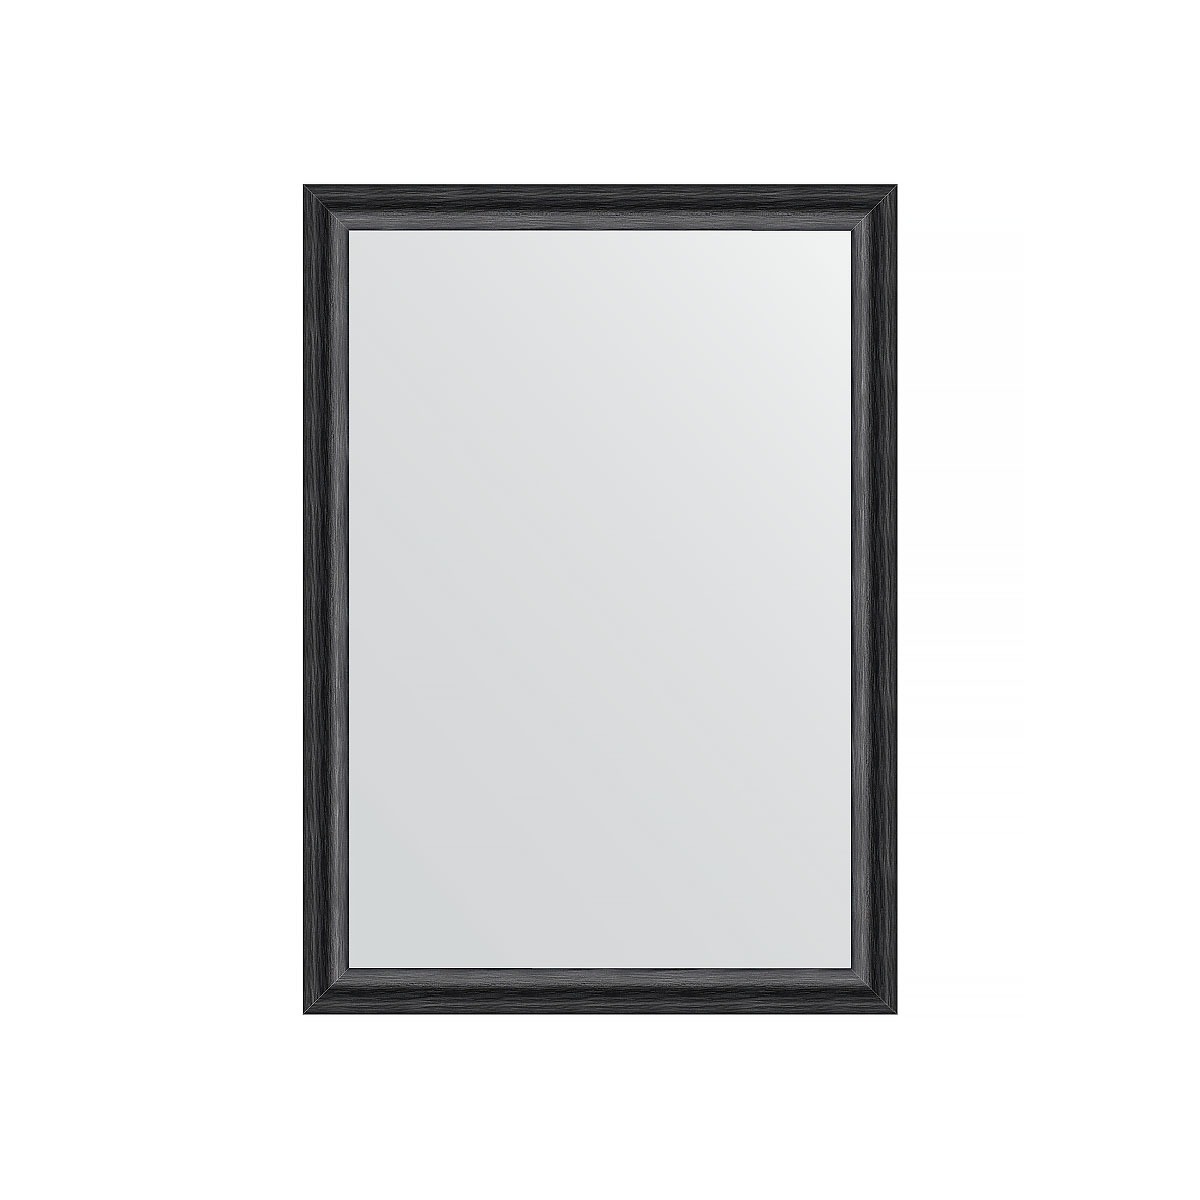 Зеркало в багетной раме Evoform черный дуб 37 мм 50х70 см зеркало в багетной раме evoform дуб 37 мм 50х70 см